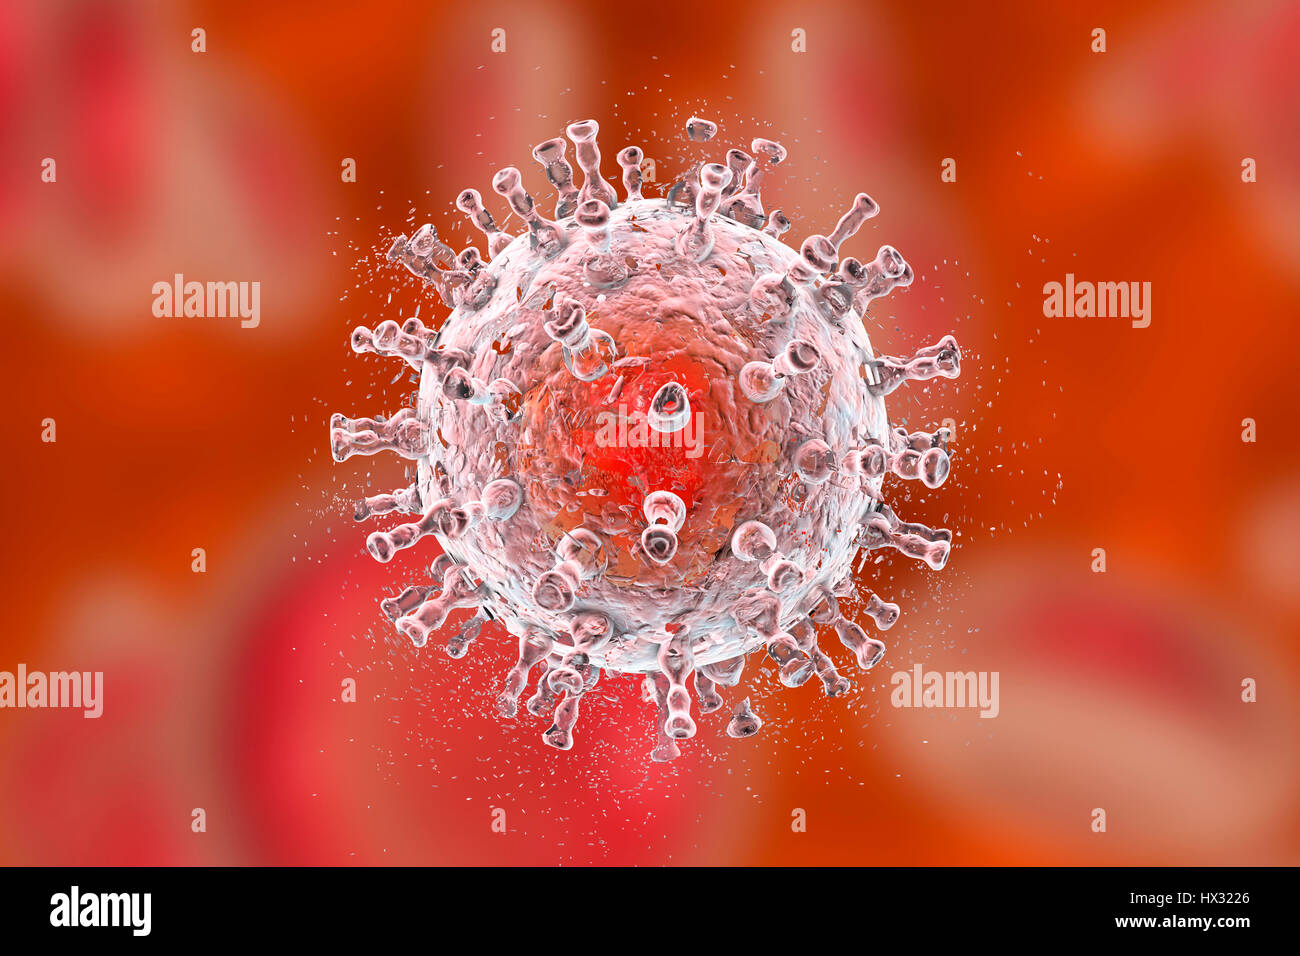 La destruction du sarcome de Kaposi (KSHV), illustration de l'ordinateur. Image conceptuelle pour le sarcome de Kaposi le traitement et la prévention. KSHV, ou l'herpèsvirus humain 8, est un oncovirus, un virus qui peut causer le cancer. Son nom est dérivé d'être l'agent causal de la maladie de Kaposi chez les patients atteints du SIDA (syndrome d'immunodéficience acquise). La capside virale entoure l'ADN (acide désoxyribonucléique) et est à son tour entouré par des protéines de tégument et une membrane lipidique. Banque D'Images